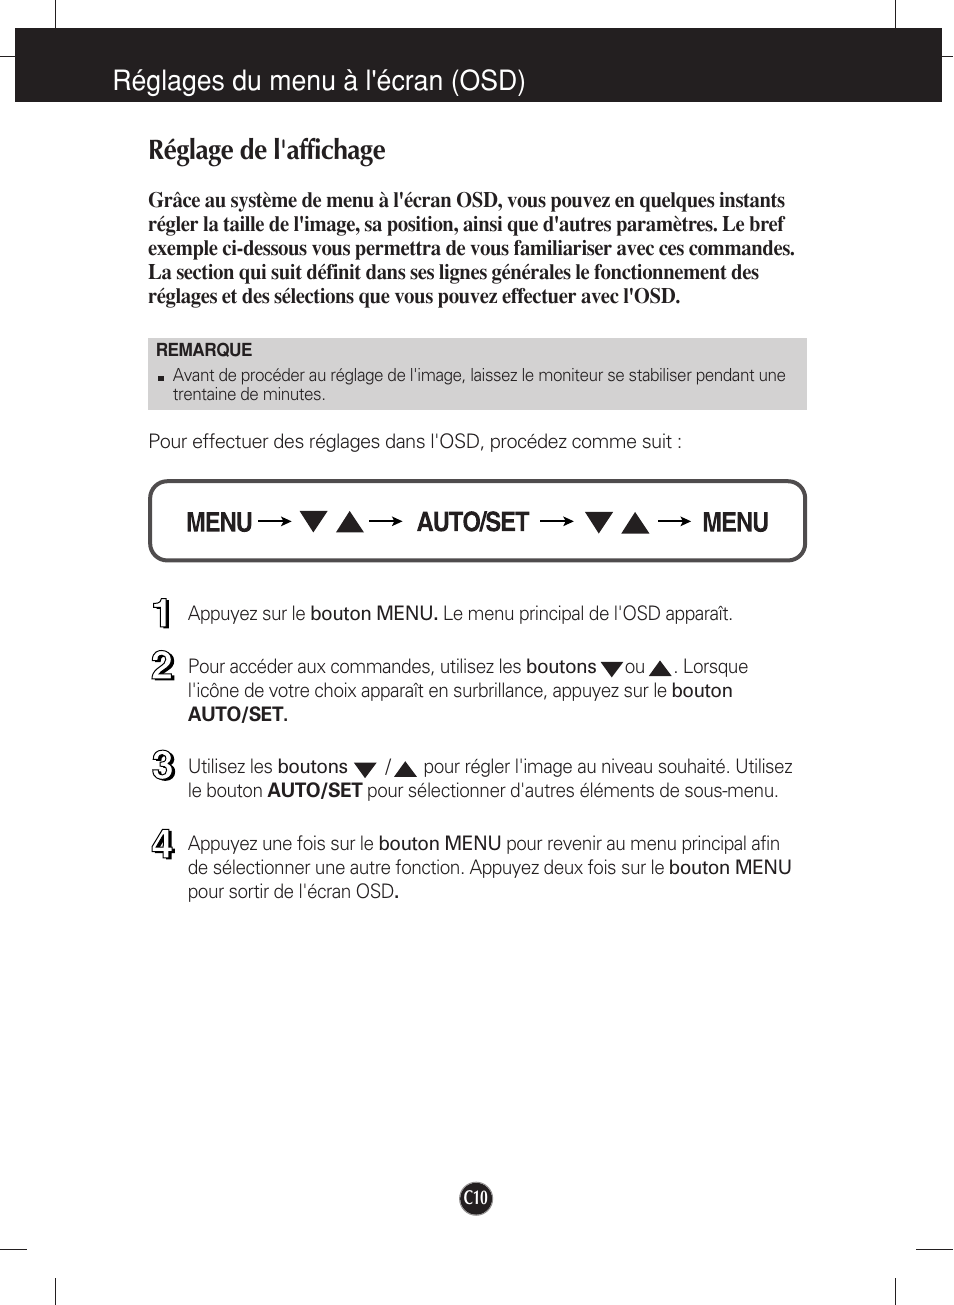 Réglages du menu à l'écran (osd), Réglage de l'affichage | LG W2452V-PF Manuel d'utilisation | Page 11 / 27